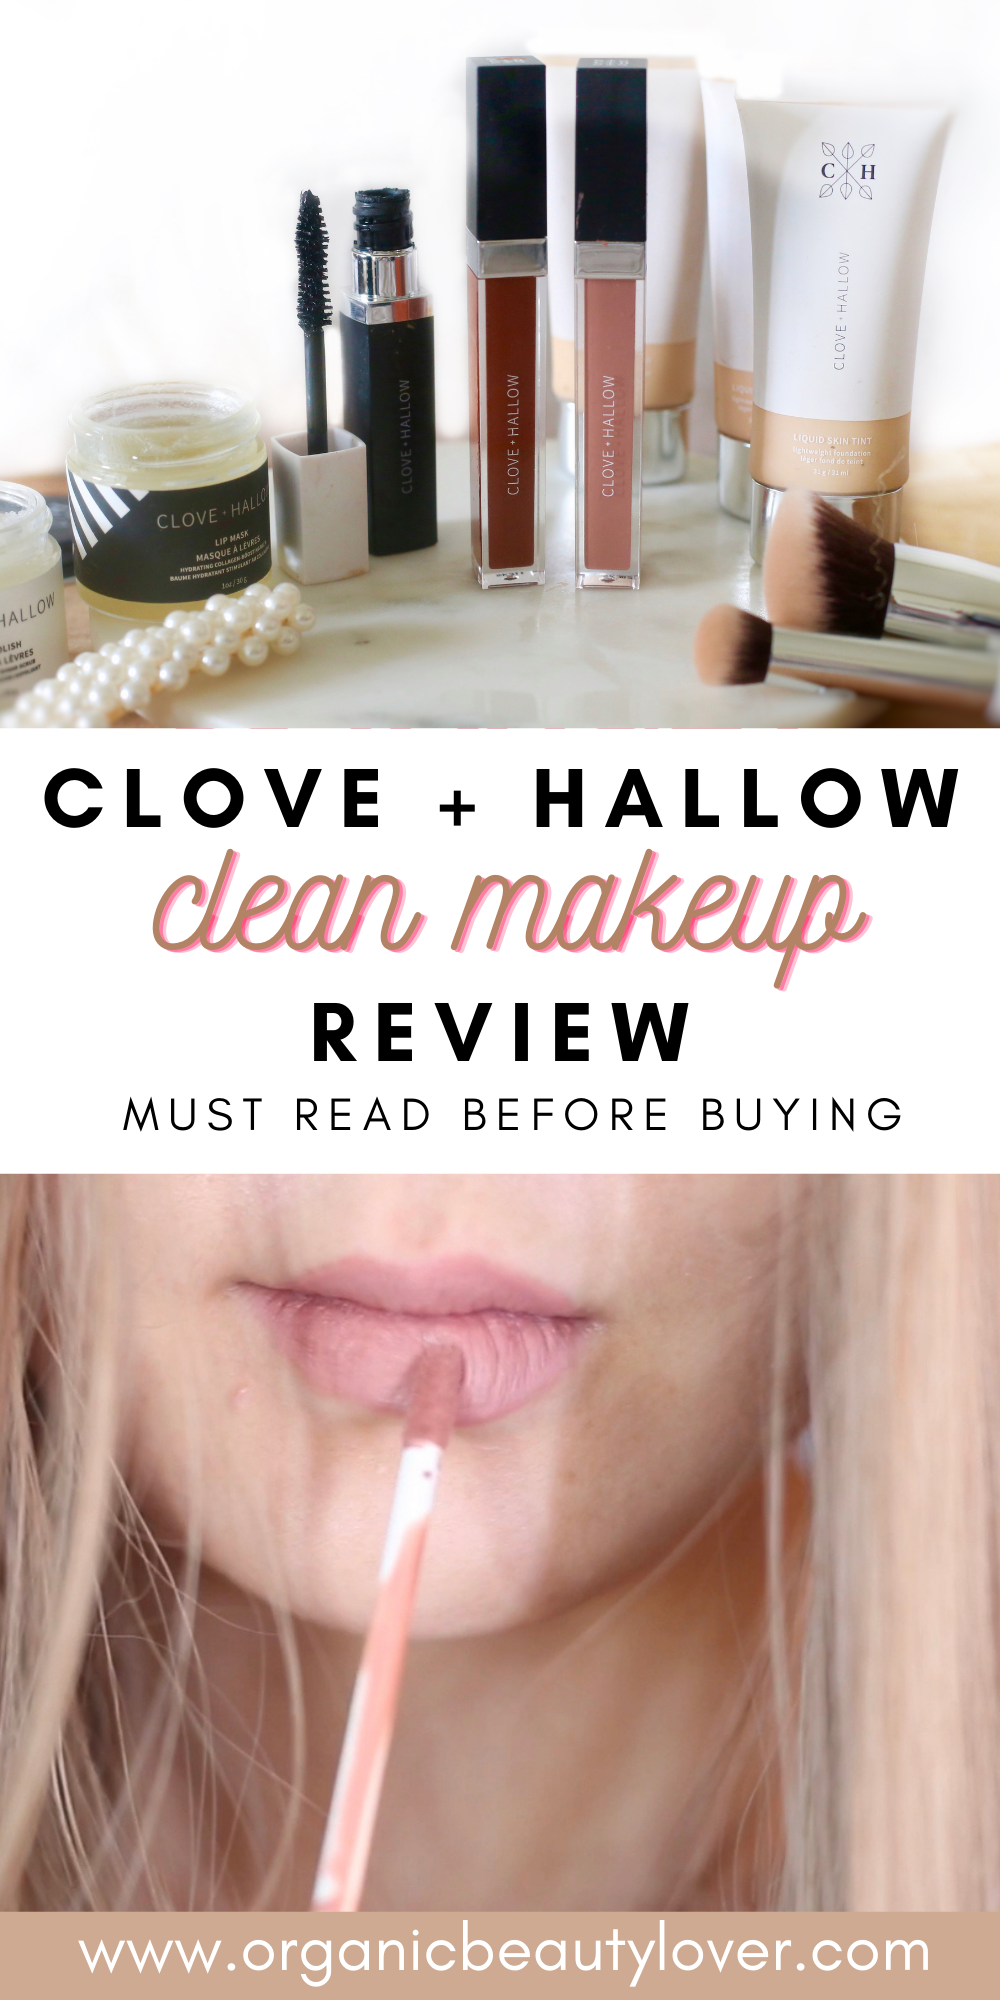 Clove hallow makeup review